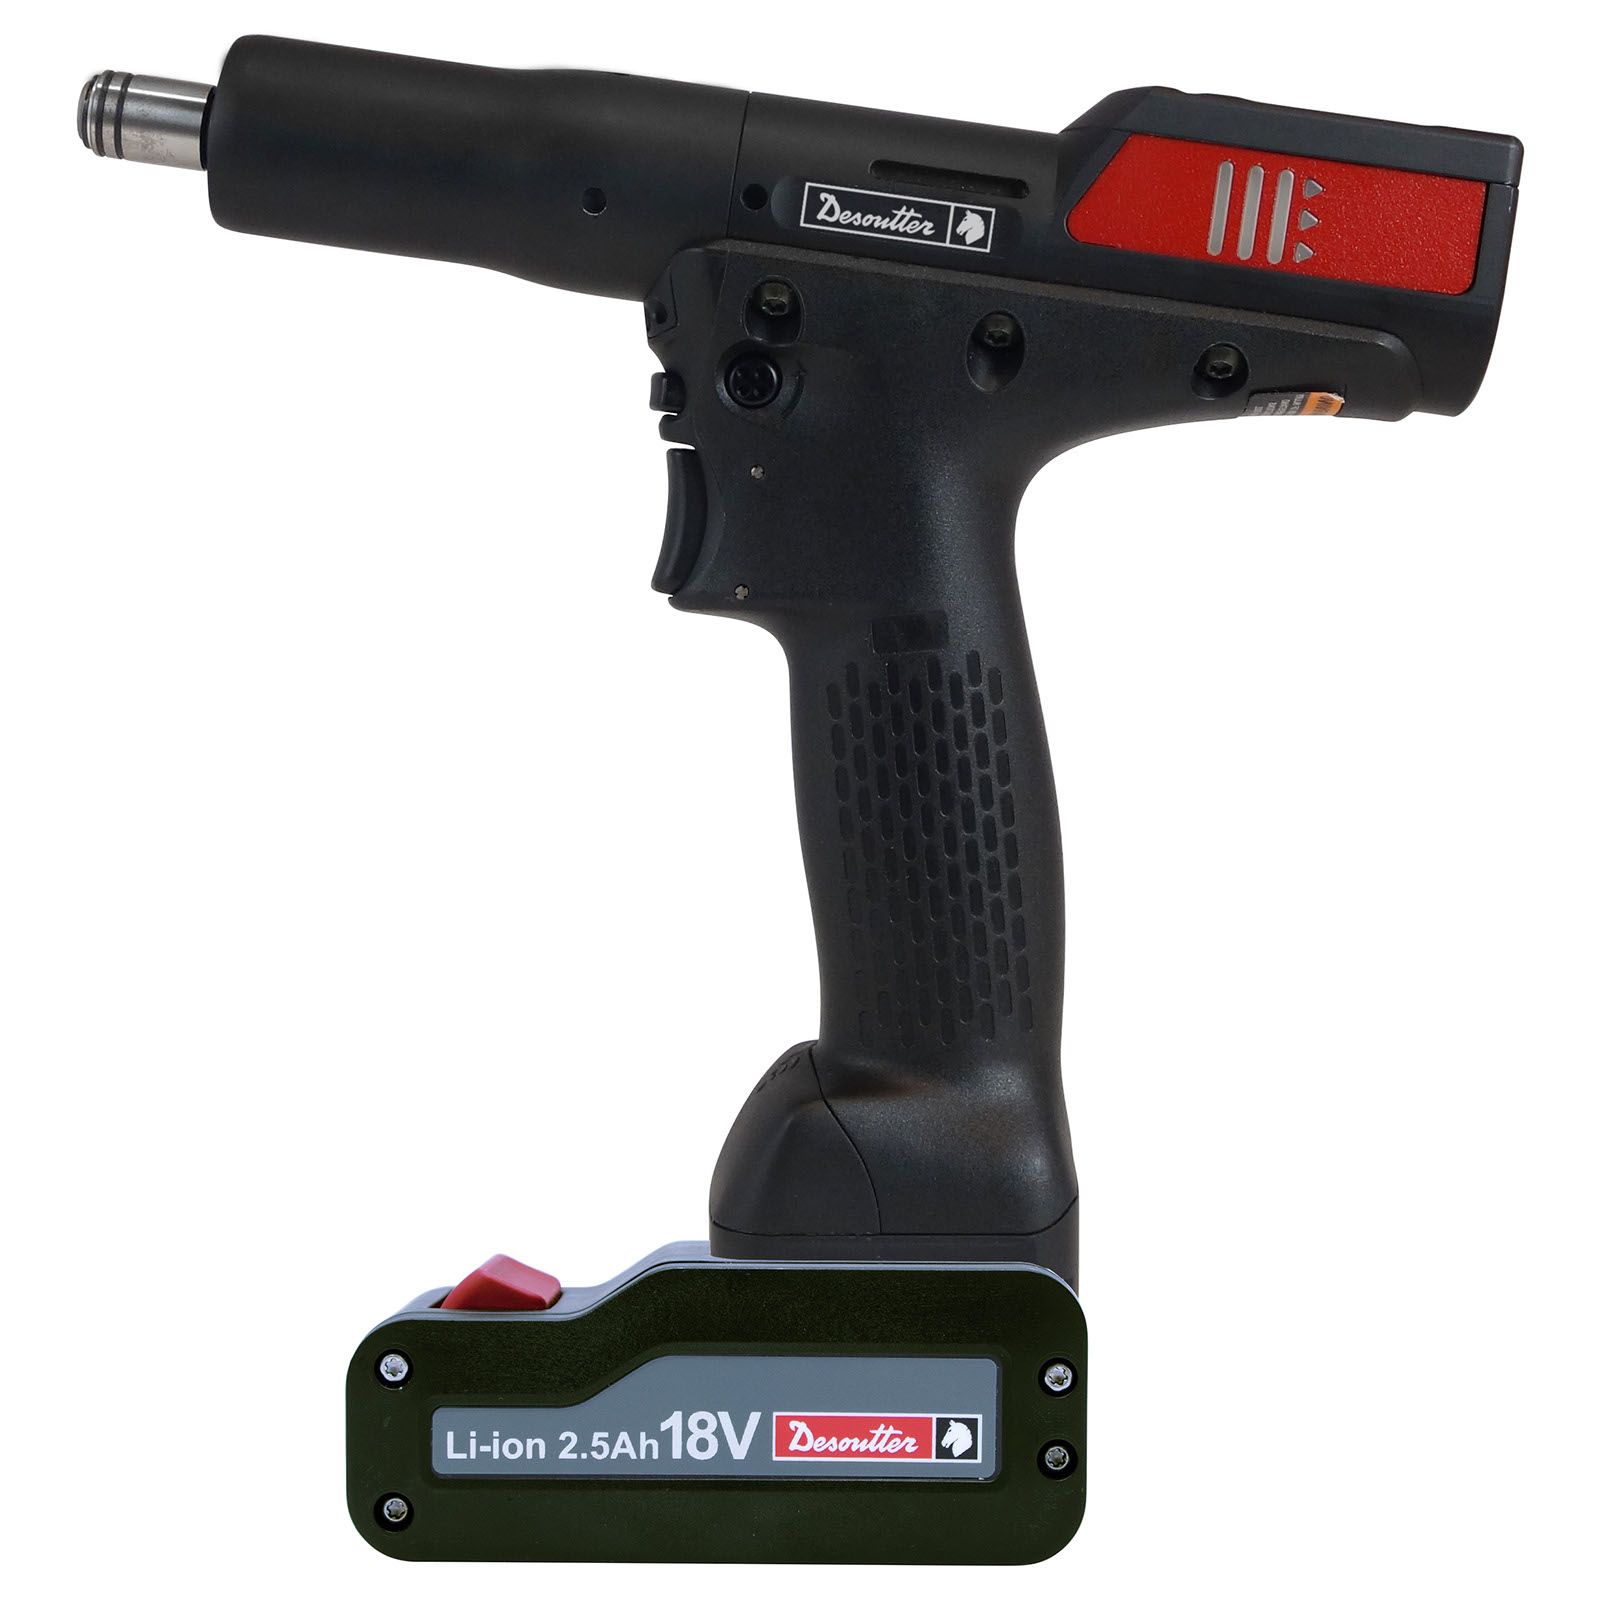 EPBcom – Akku-Pistolenschrauber mit WLAN und Messwertgeber product photo